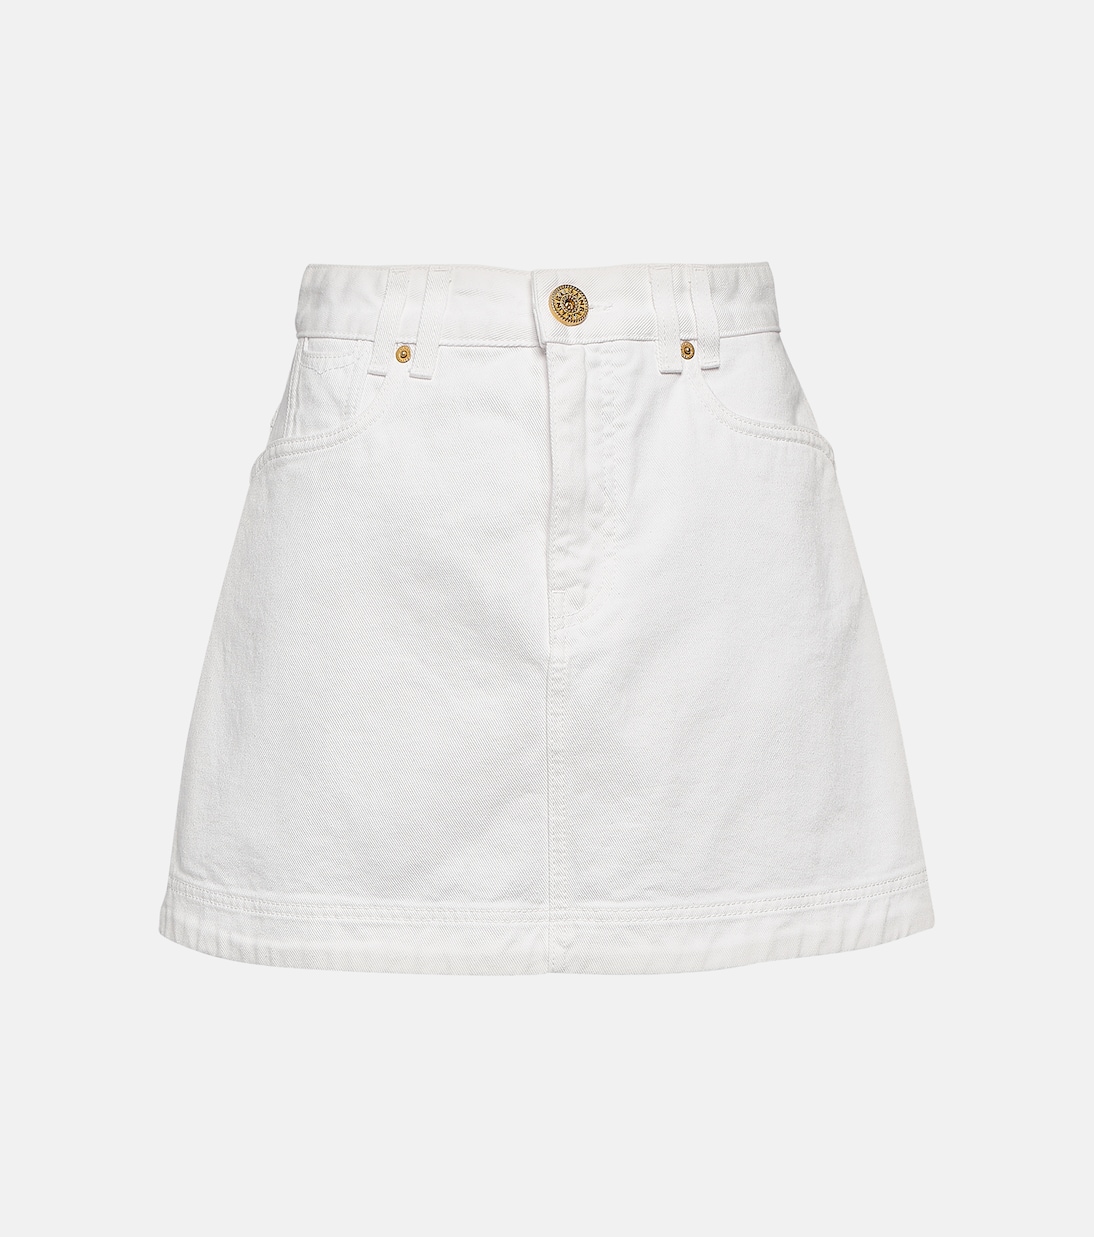 Джинсовая мини-юбка Balmain, белый синяя джинсовая мини юбка в стиле вестерн balmain